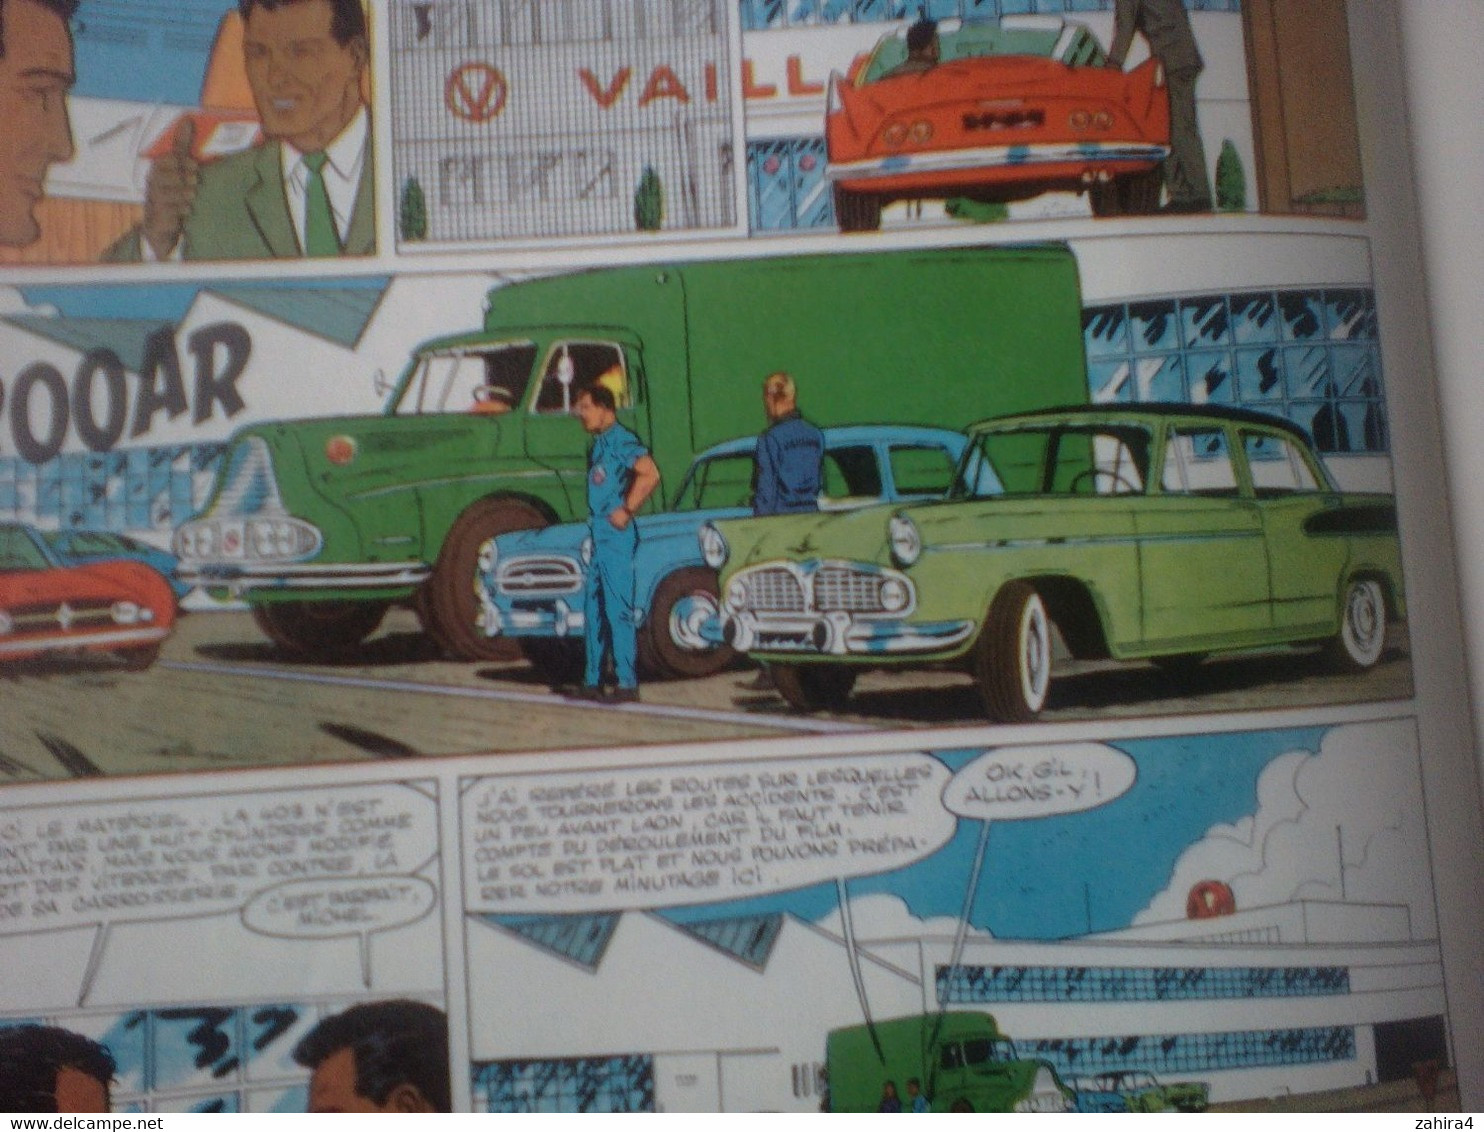 Jean Graton - Les casse-cou - Histoire du journal de Tintin 403 Peugeot Simca 1000 Baulieu Conseils cascade Gil Delamare